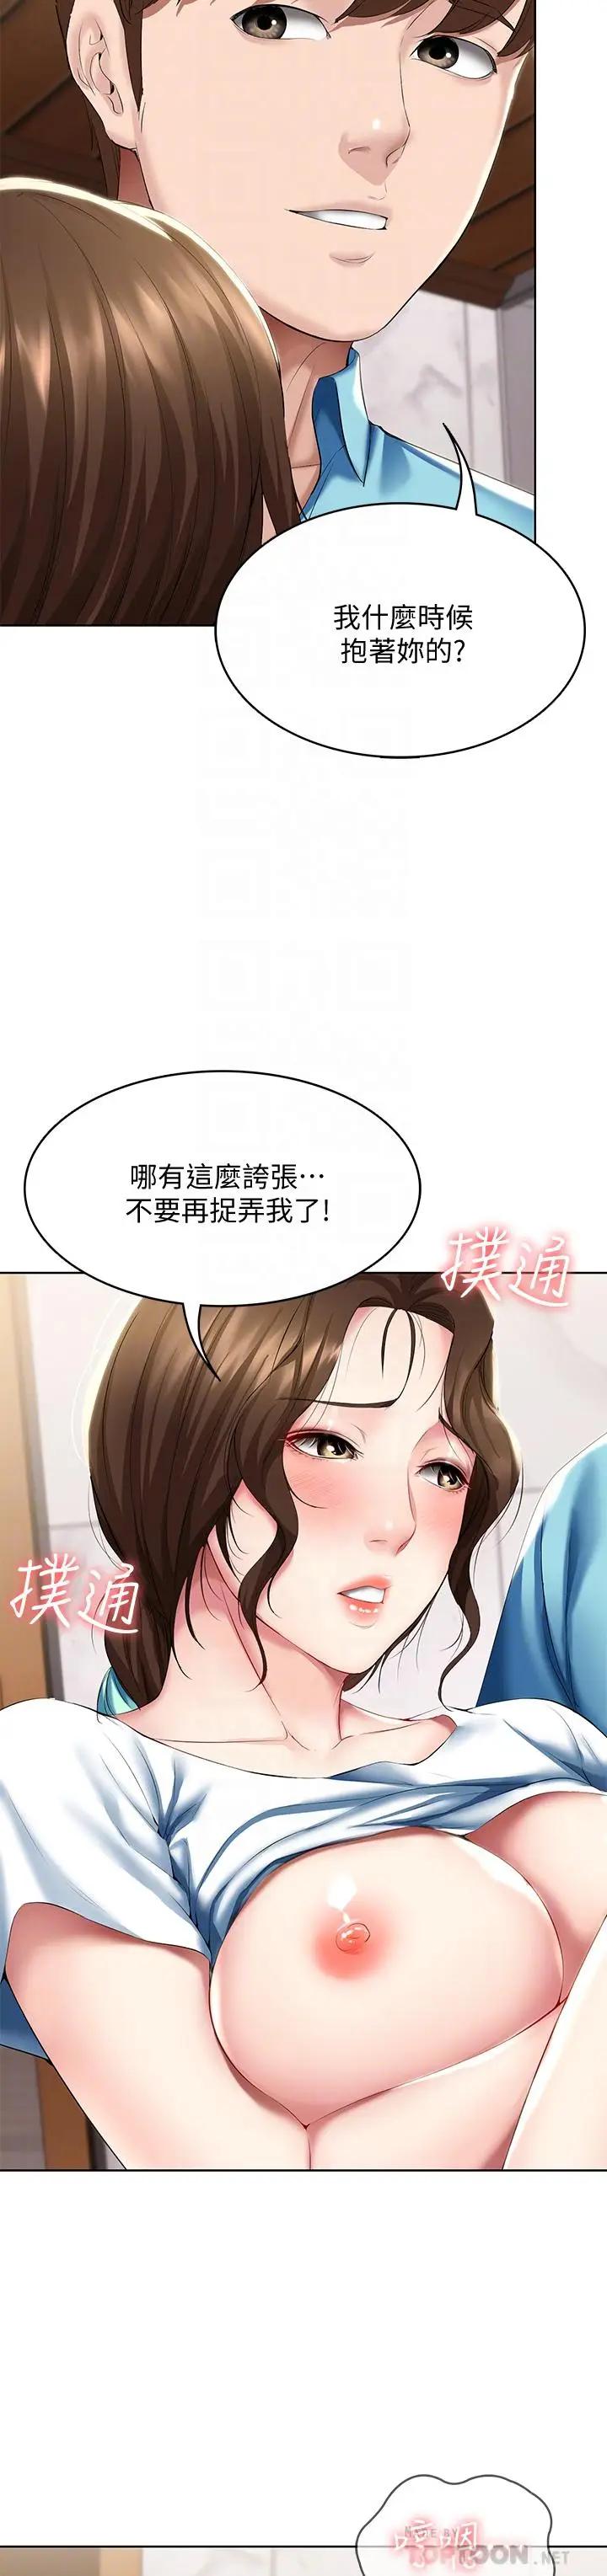 韩国污漫画 寄宿日記 第56话妖艳美静的特别服务 6